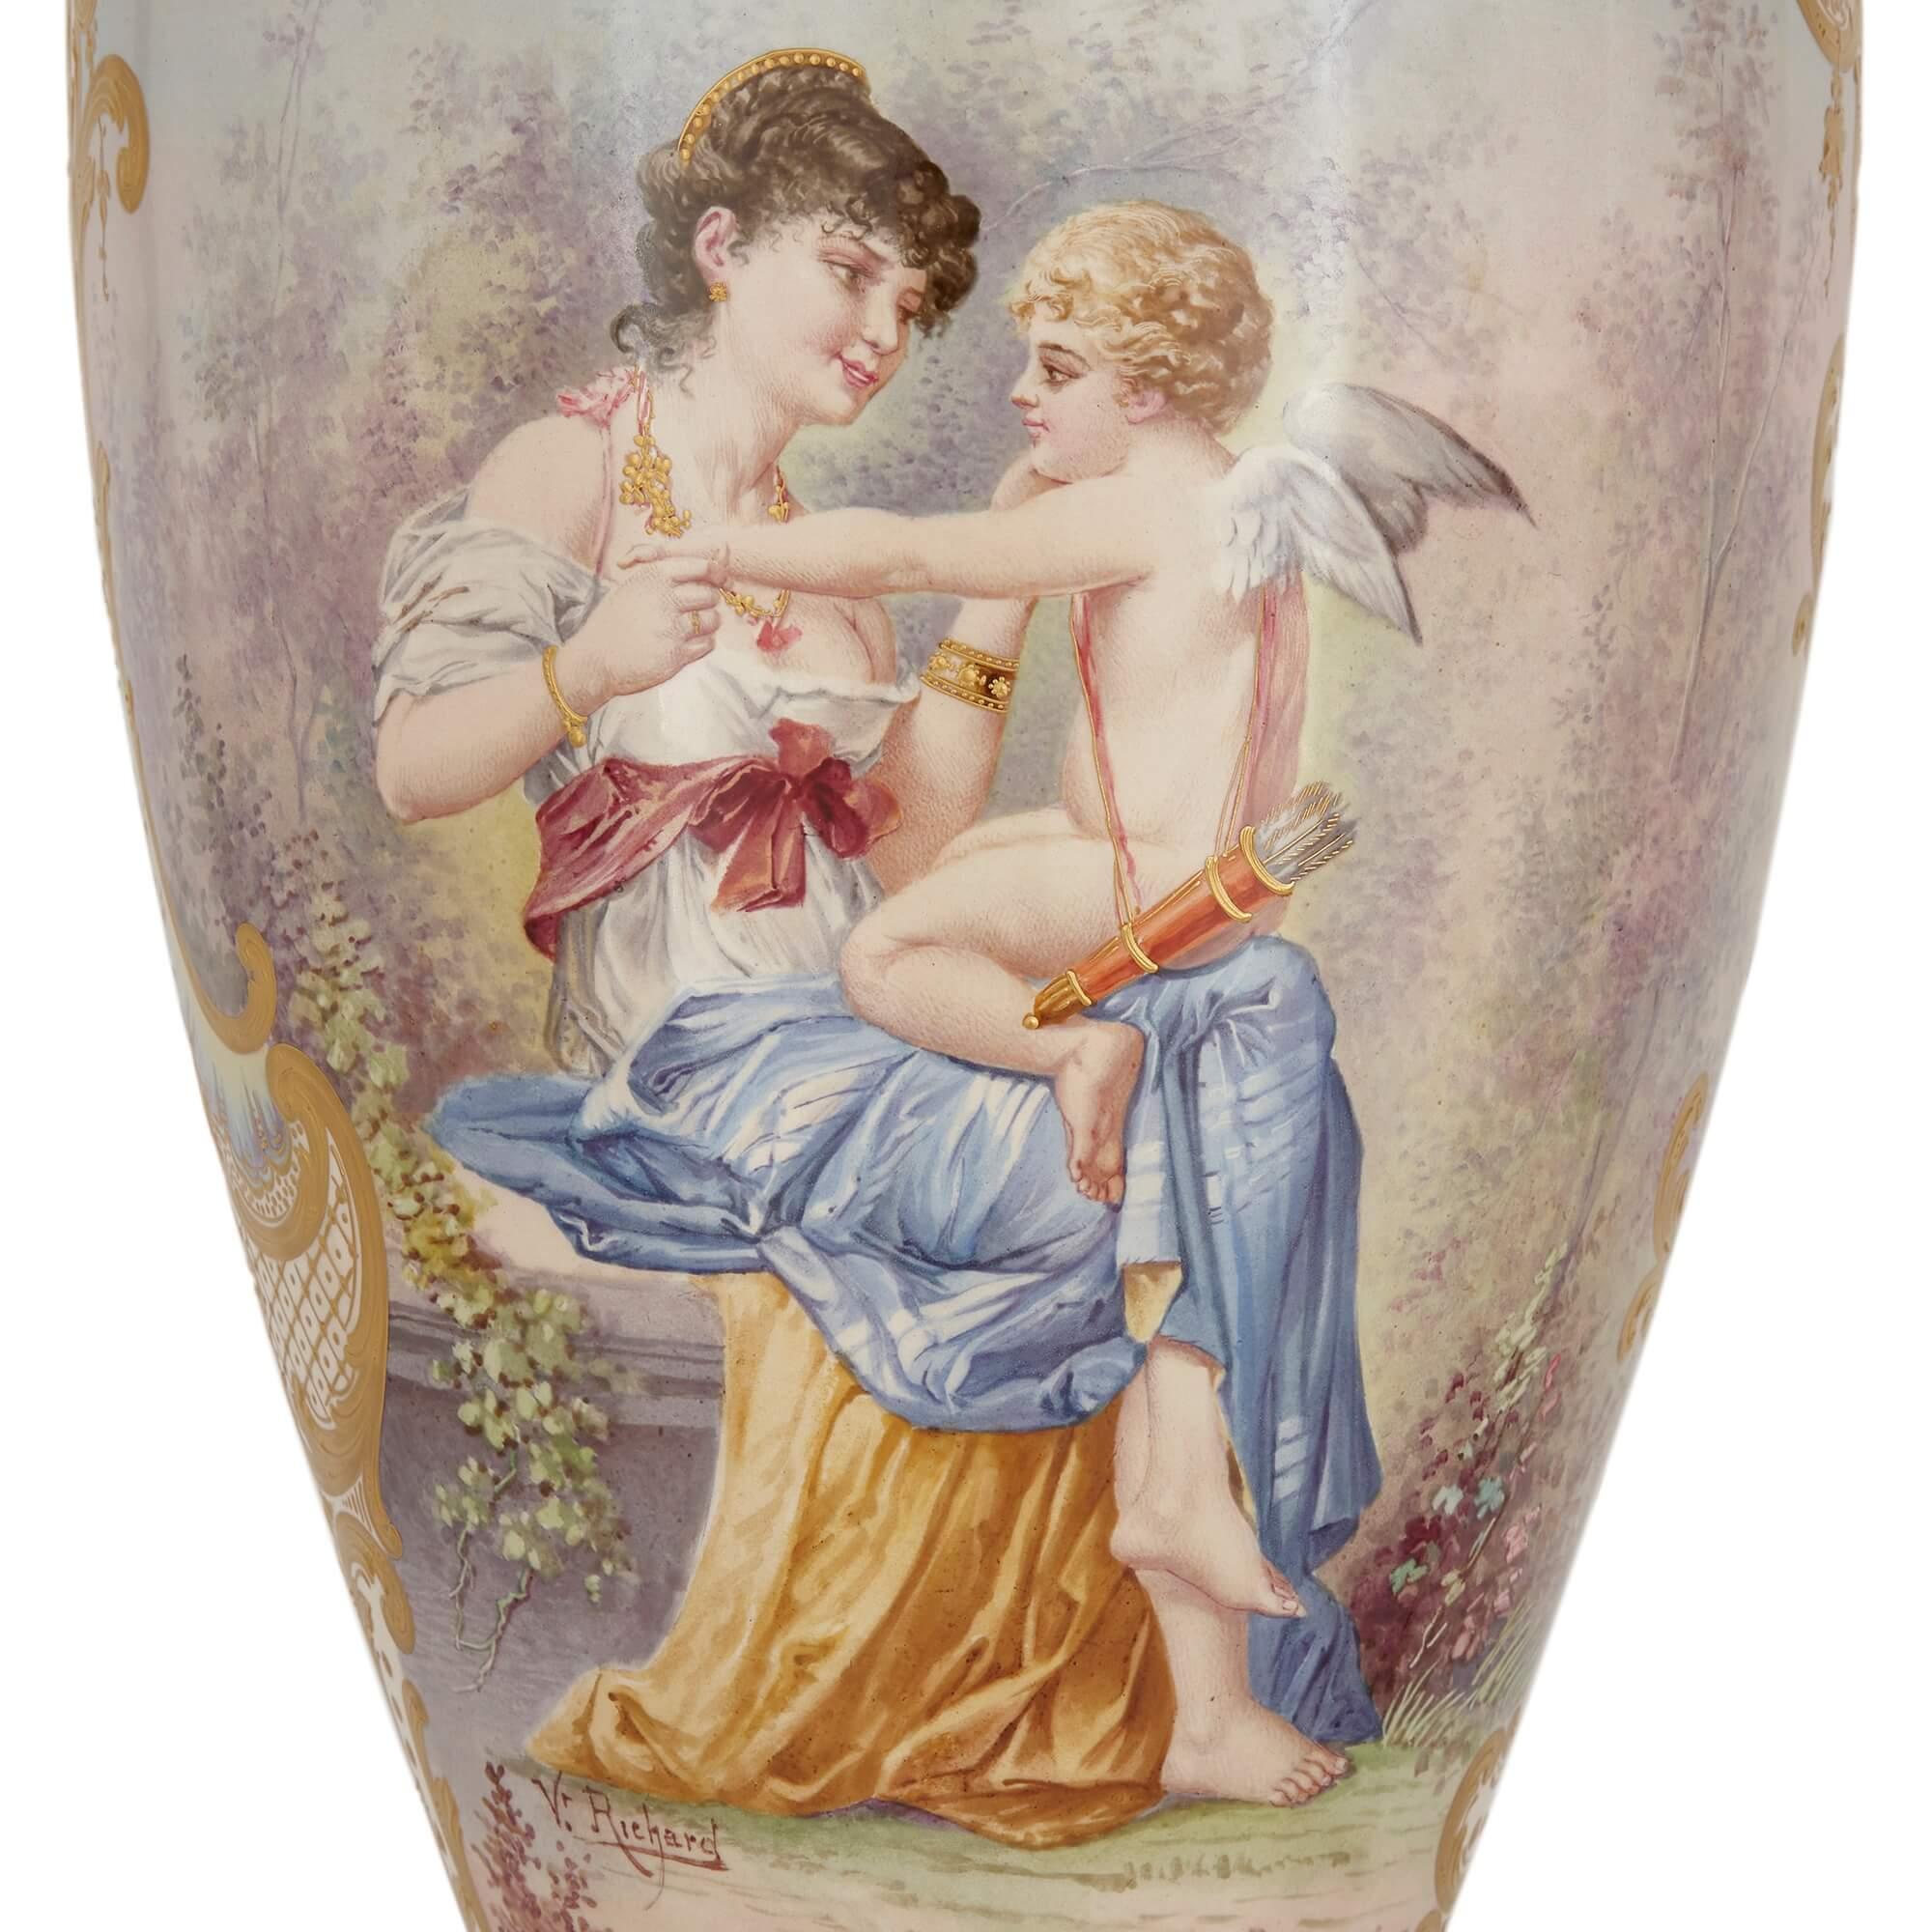 Zwei große, vergoldete Porzellanvasen im Sèvres-Stil.
Französisch, Ende 19. Jahrhundert.
Höhe 97 cm, Durchmesser 26 cm.

Bei diesen schönen Vasen handelt es sich um ein Paar im Stil von Sèvres, einer berühmten französischen Porzellanmanufaktur,